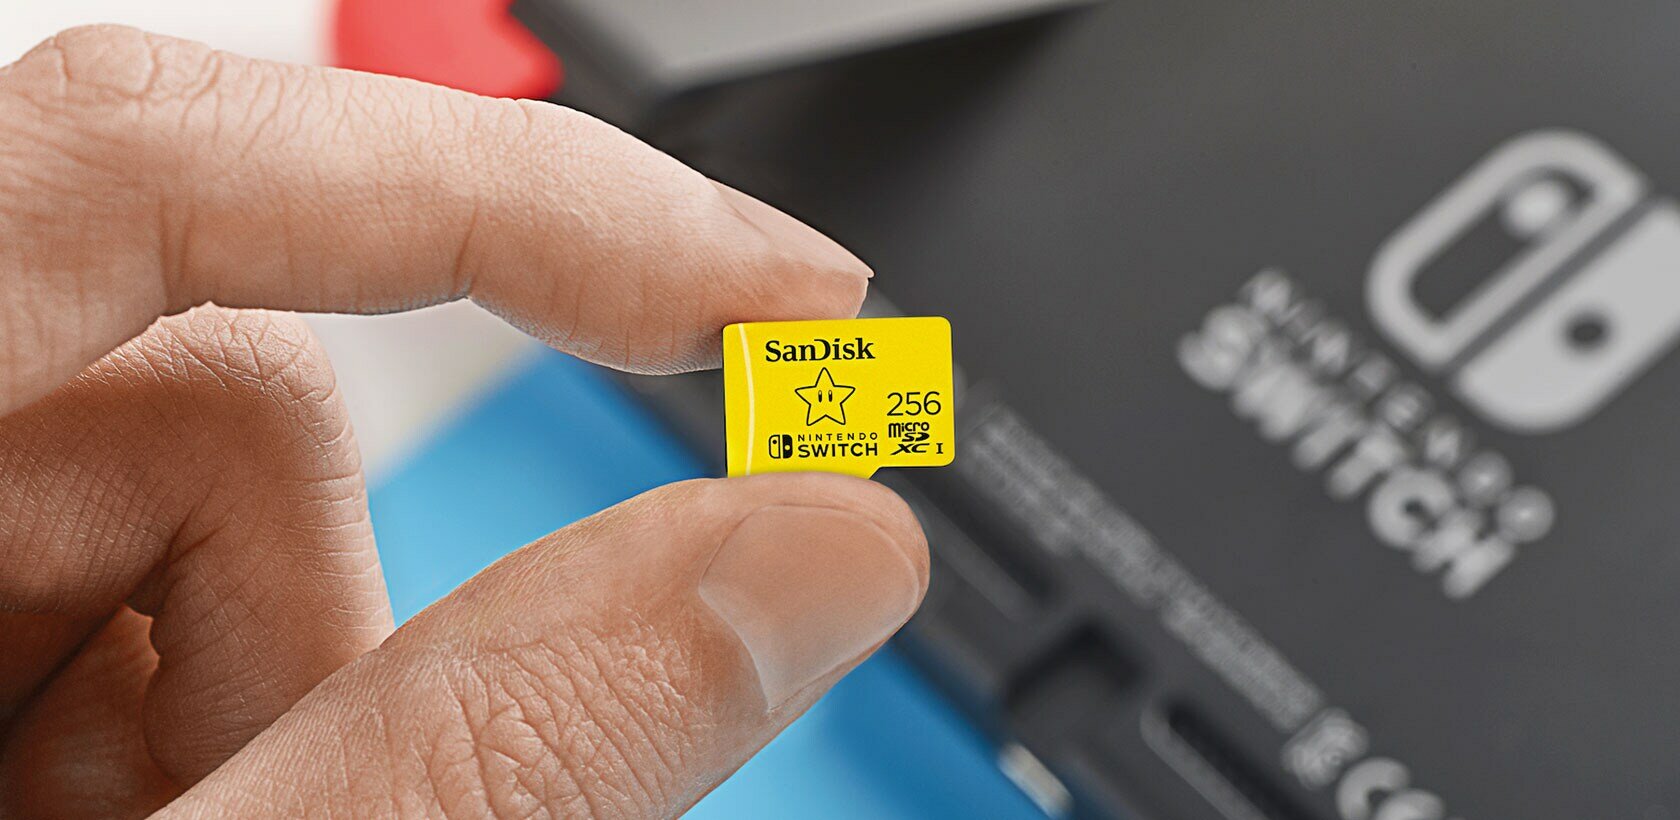 Carte Micro SD Zelda 64 Go pour Nintendo Switch